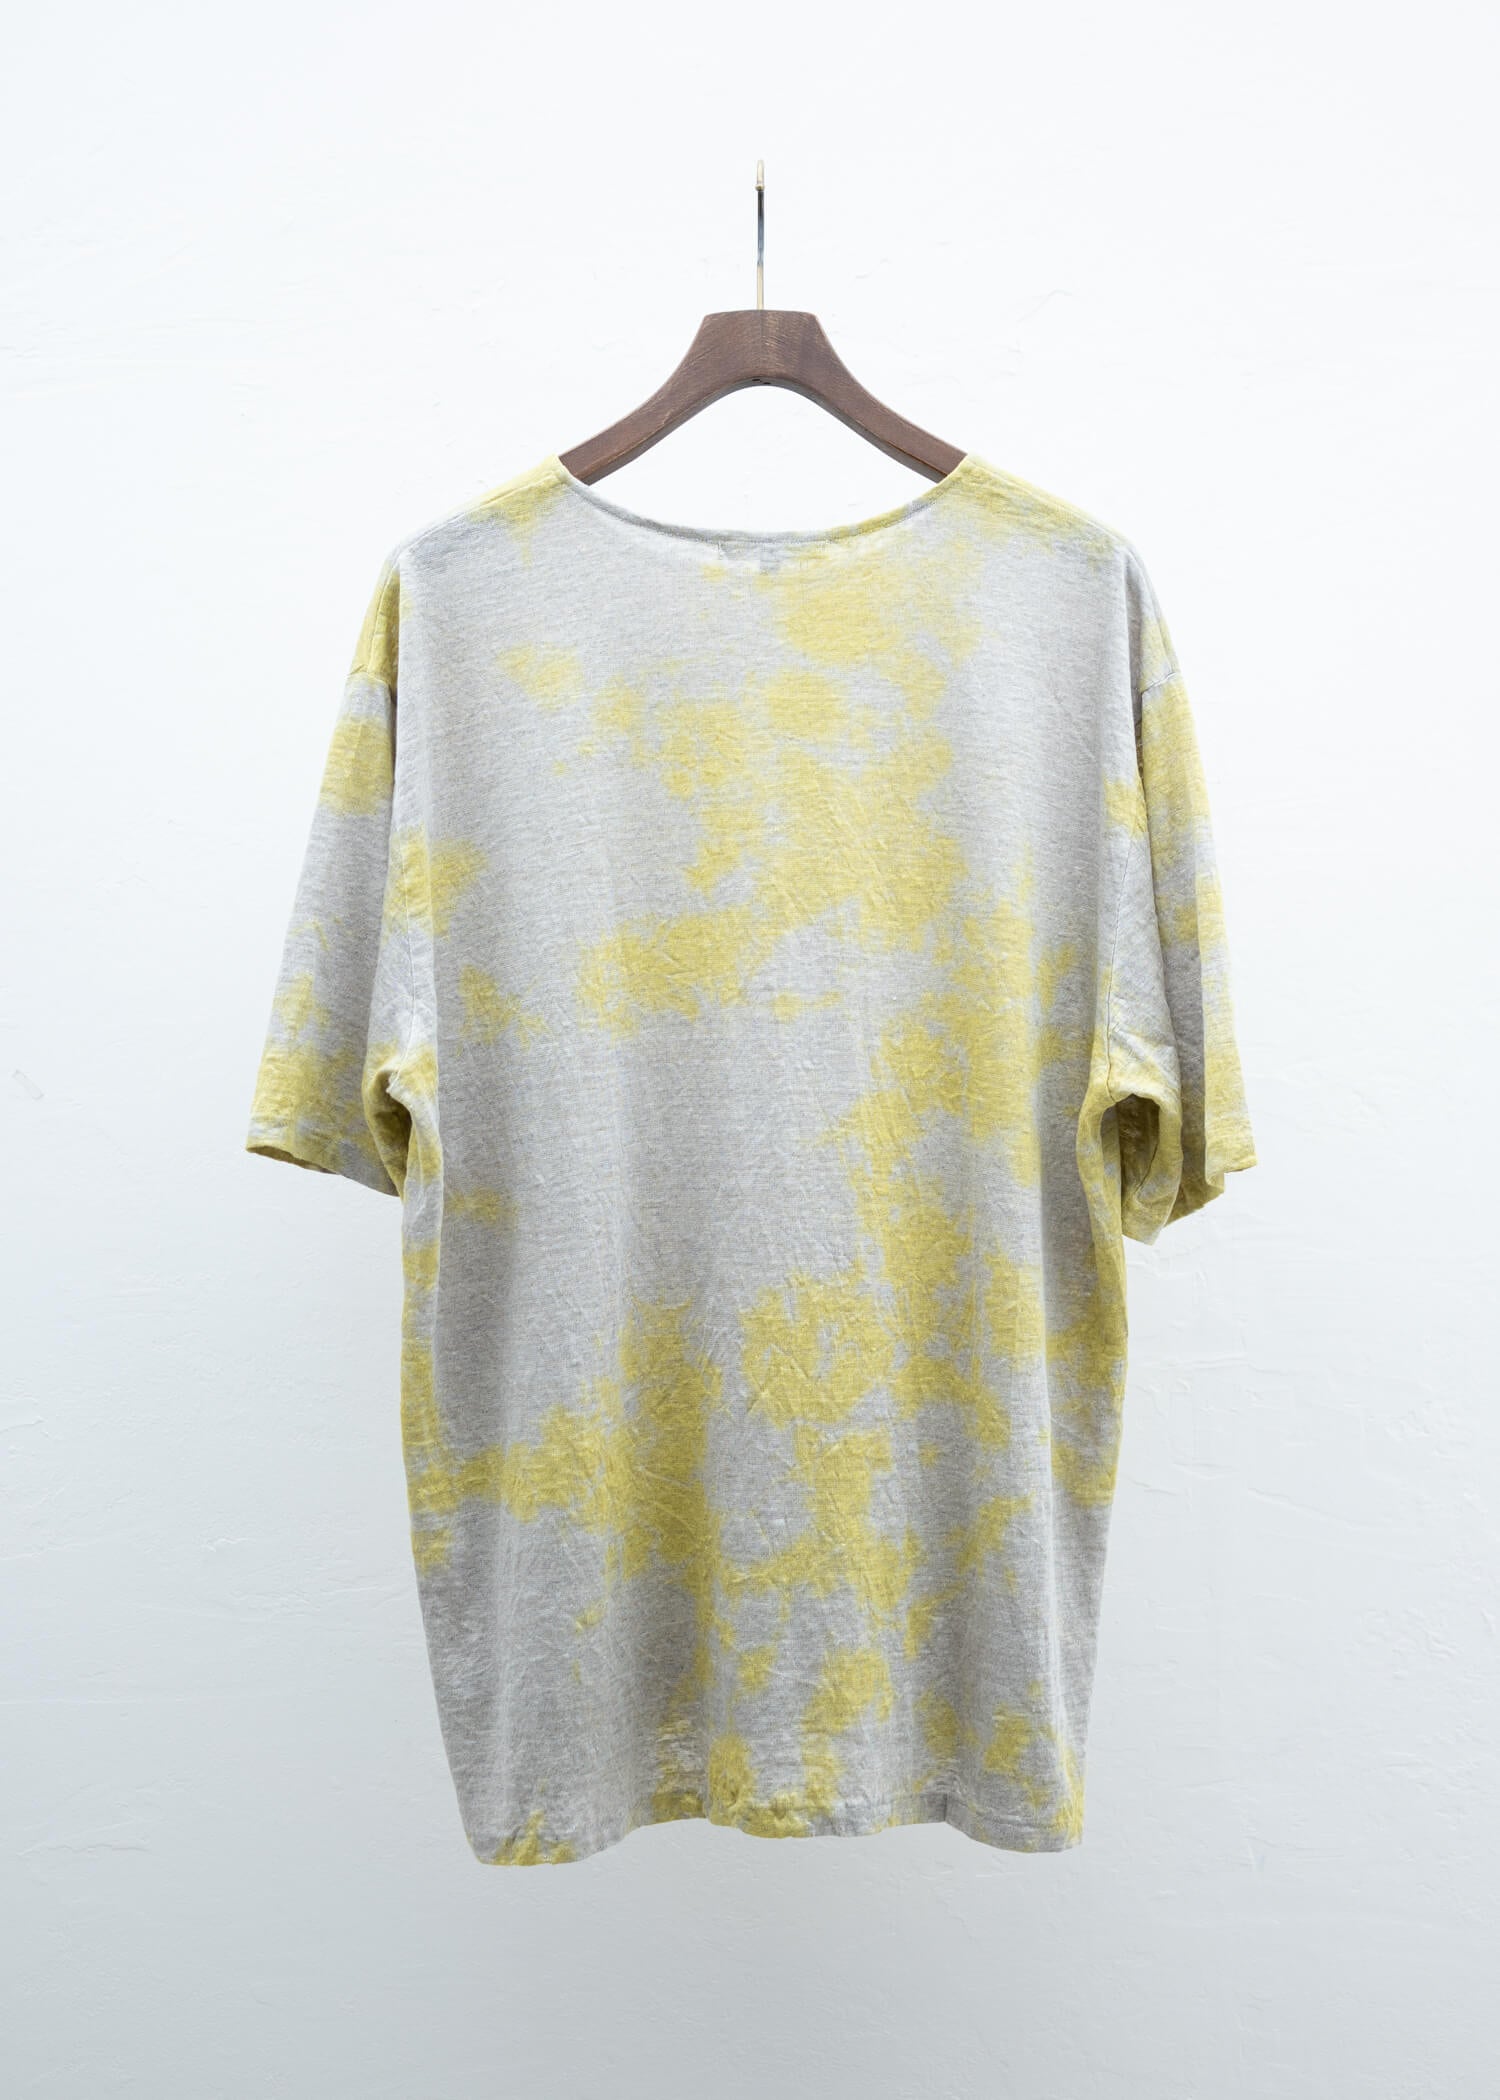 SUZUSAN Linen Jersey Short Sleeve T-Shirt Yellow / Grége